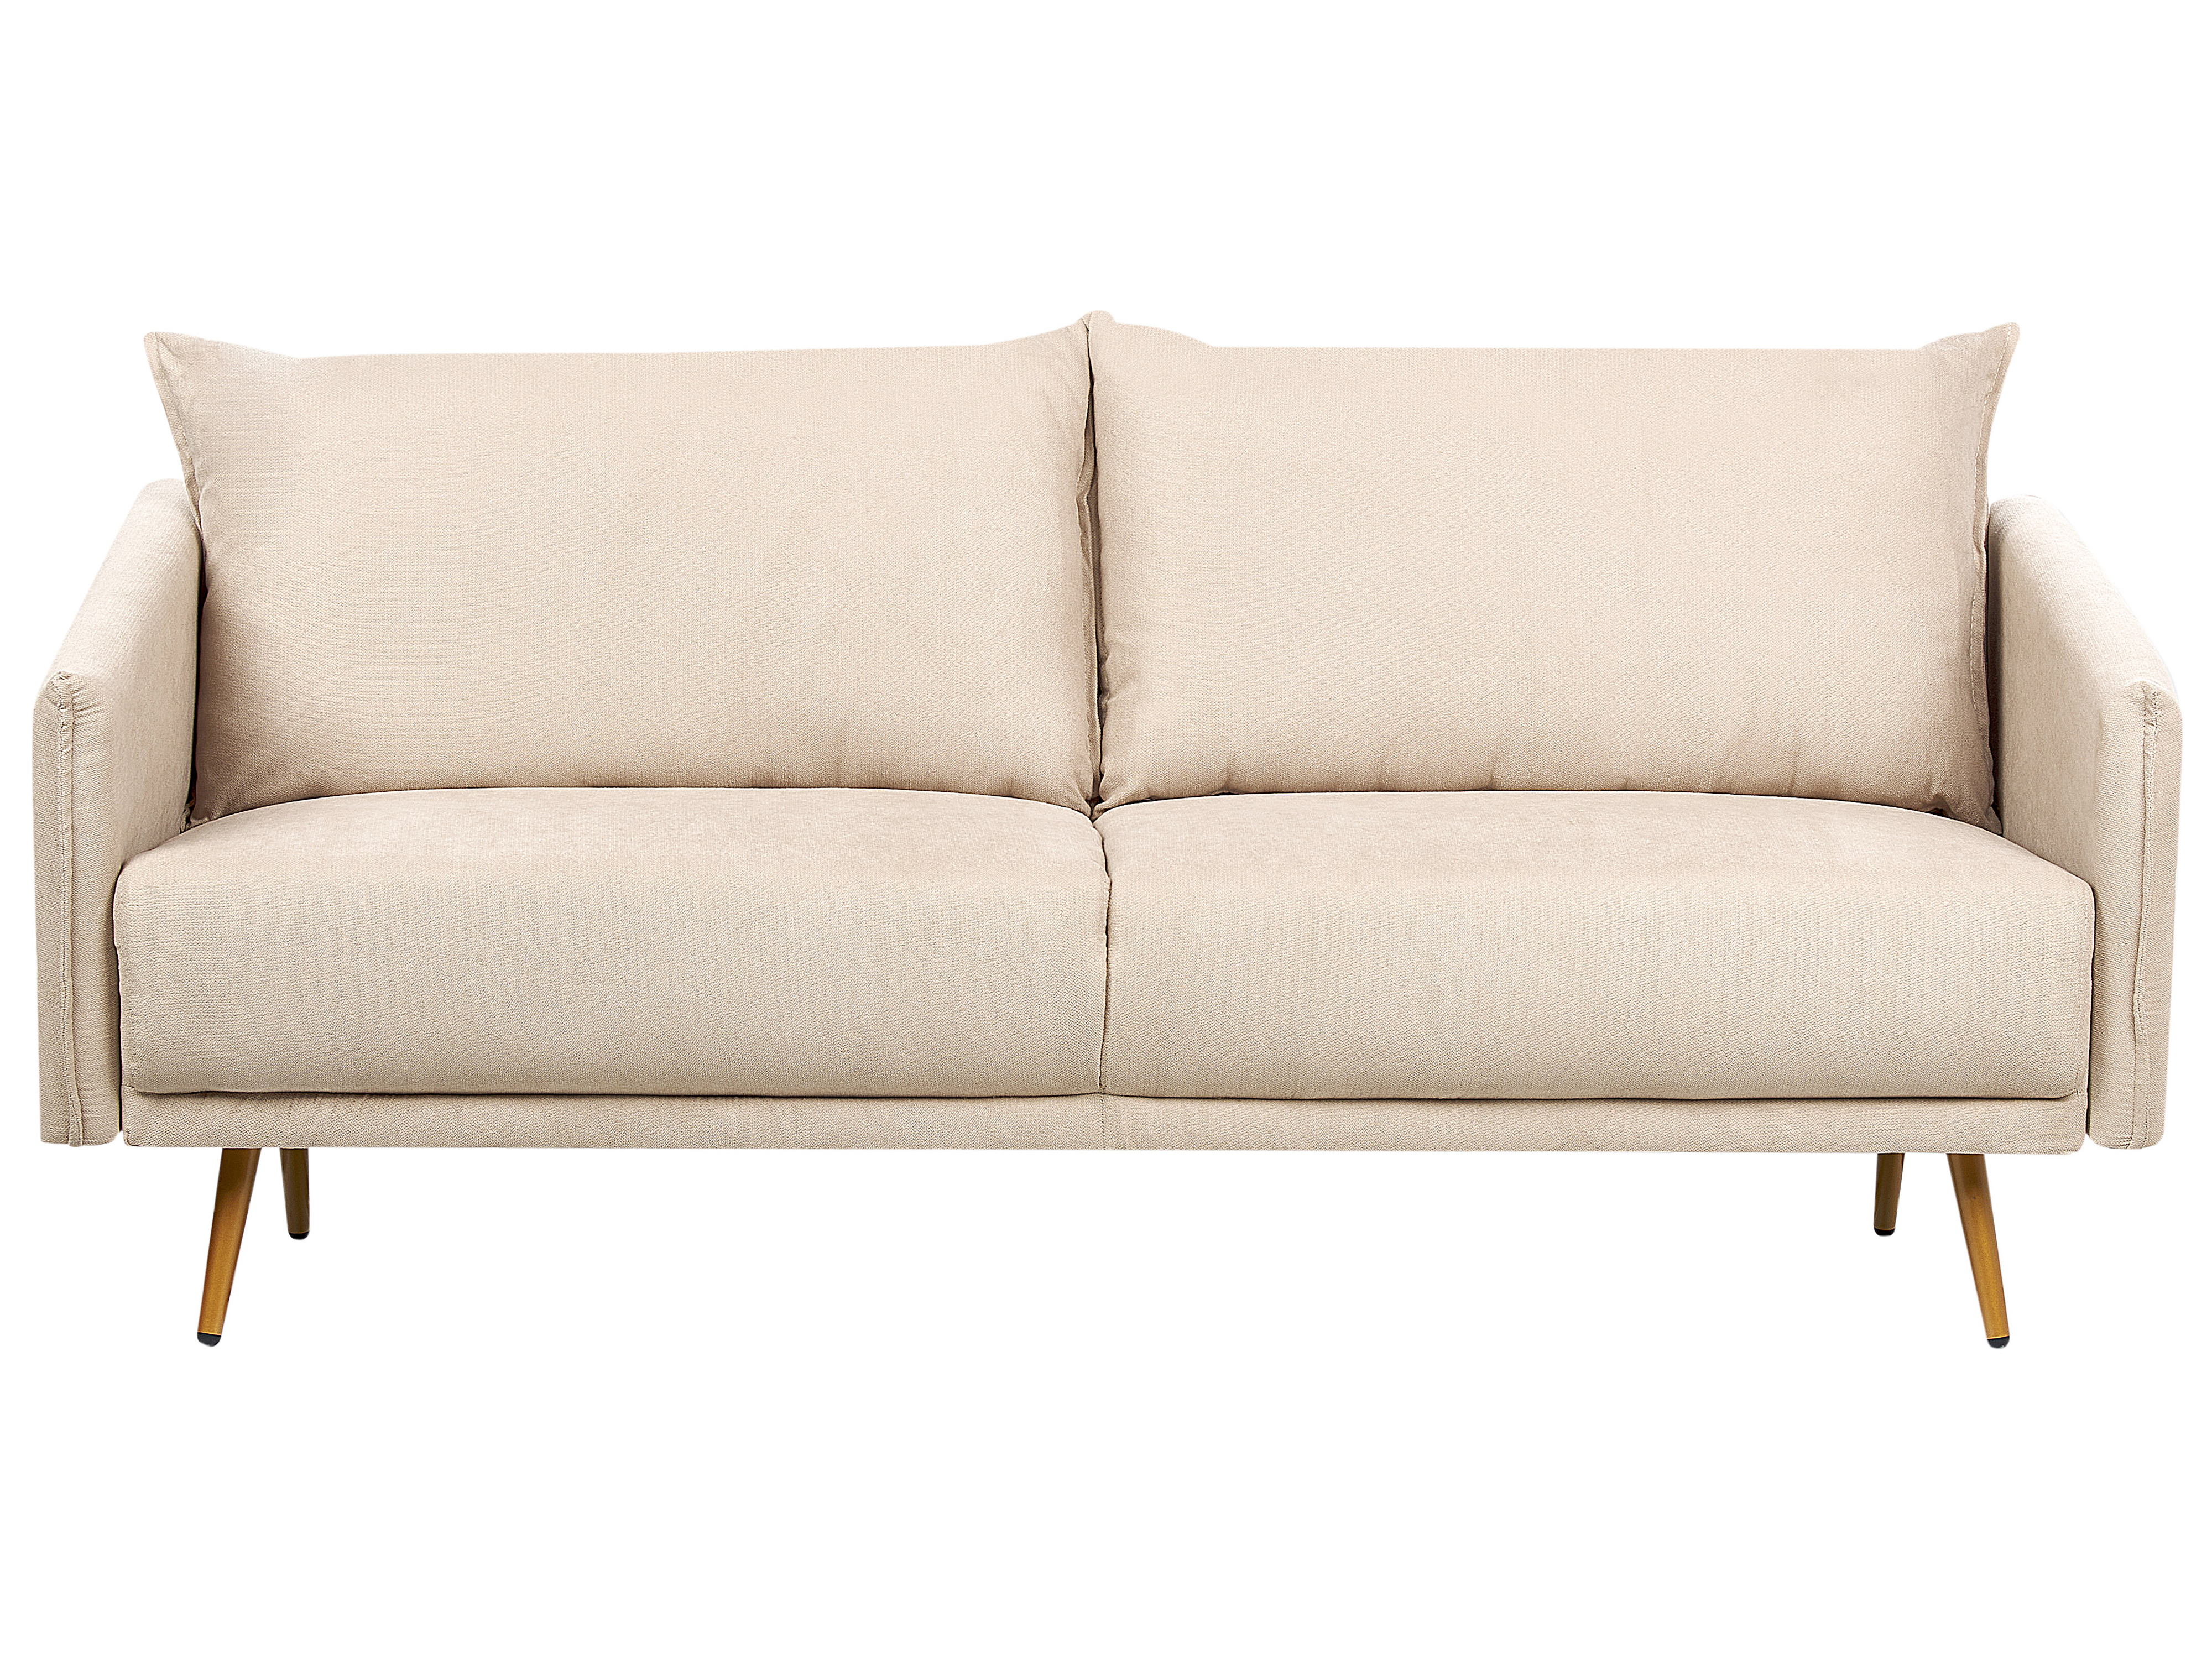 3-Sitzer Sofa Samtstoff beige mit goldenen Beinen MAURA